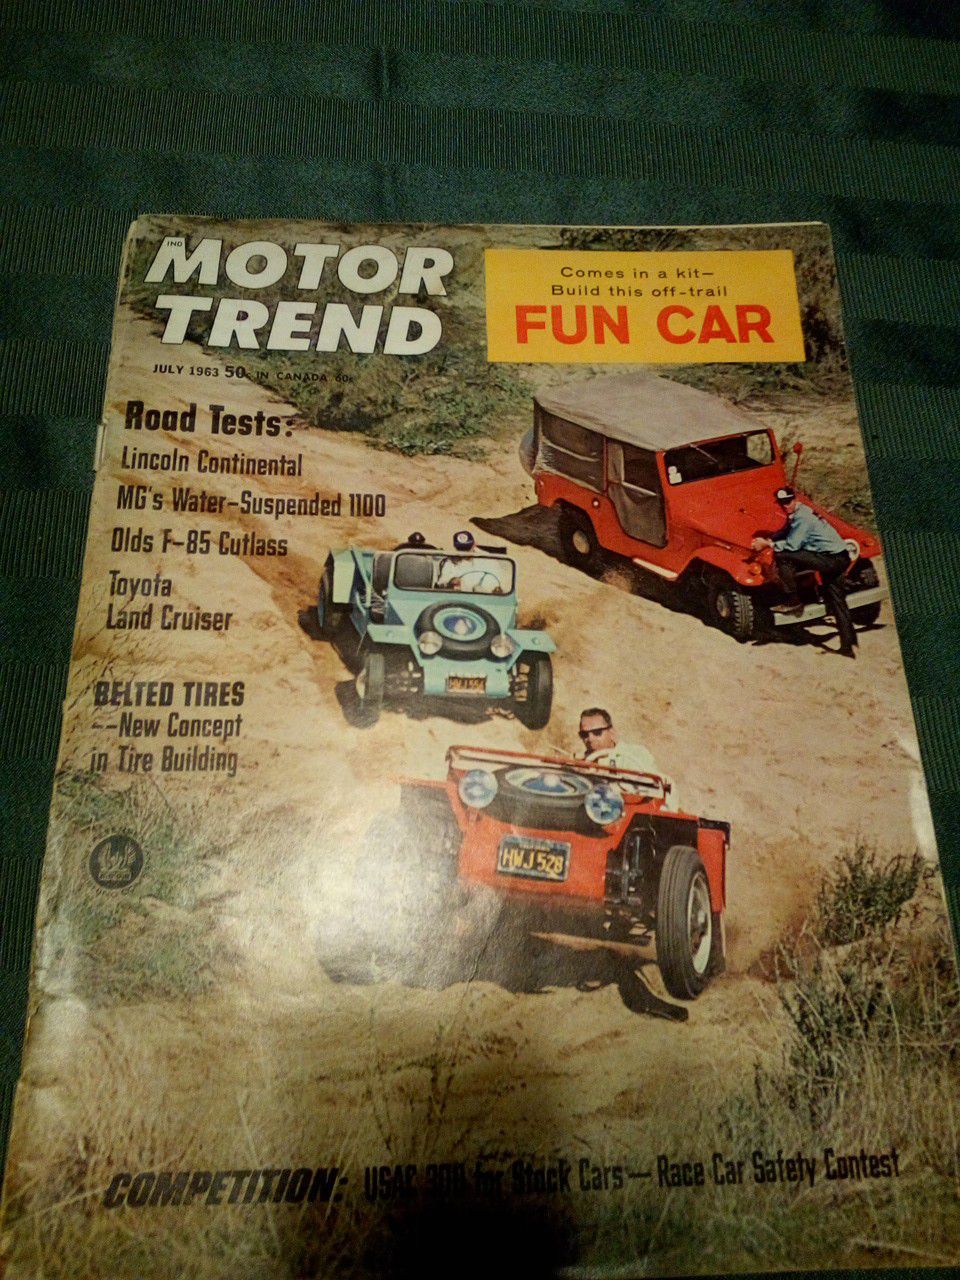 Motor trend July 1963